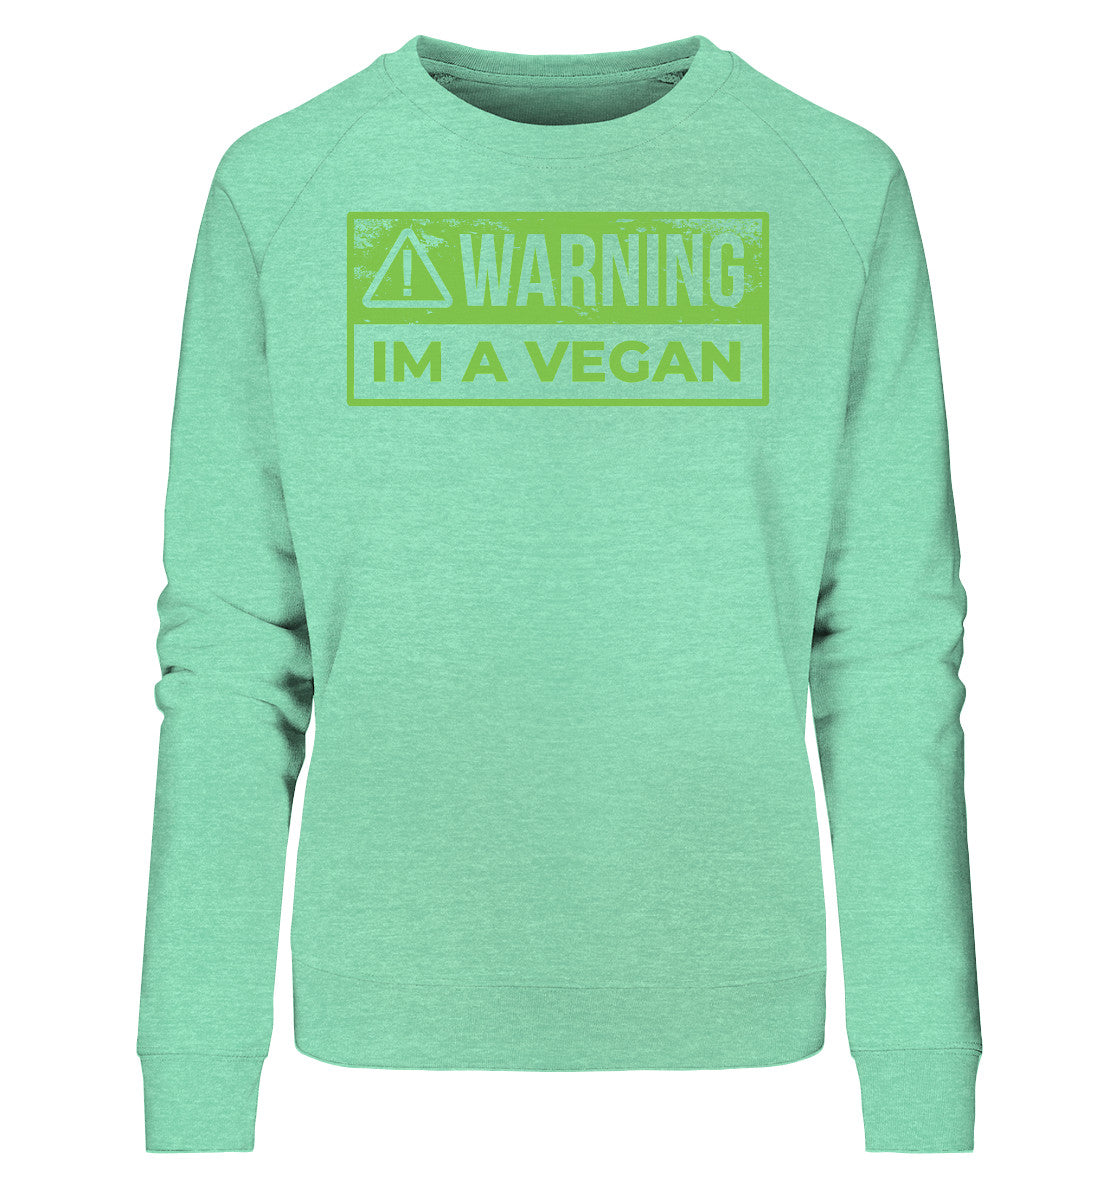 Warning Im a Vegan - Ladies Organic Sweatshirt